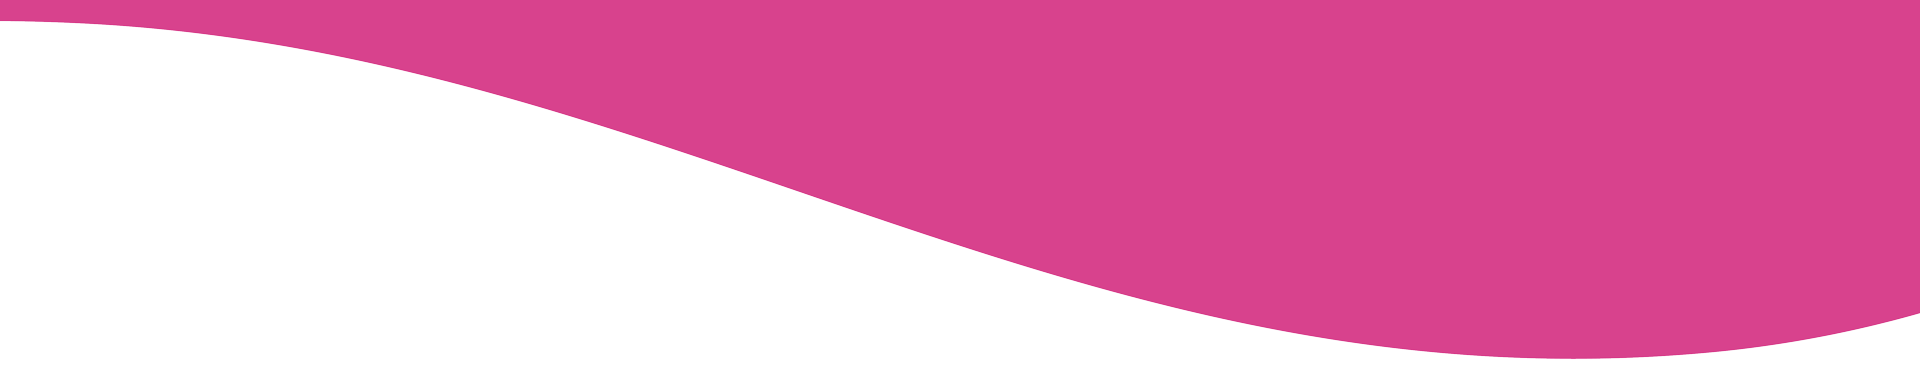 pink curve decorative element